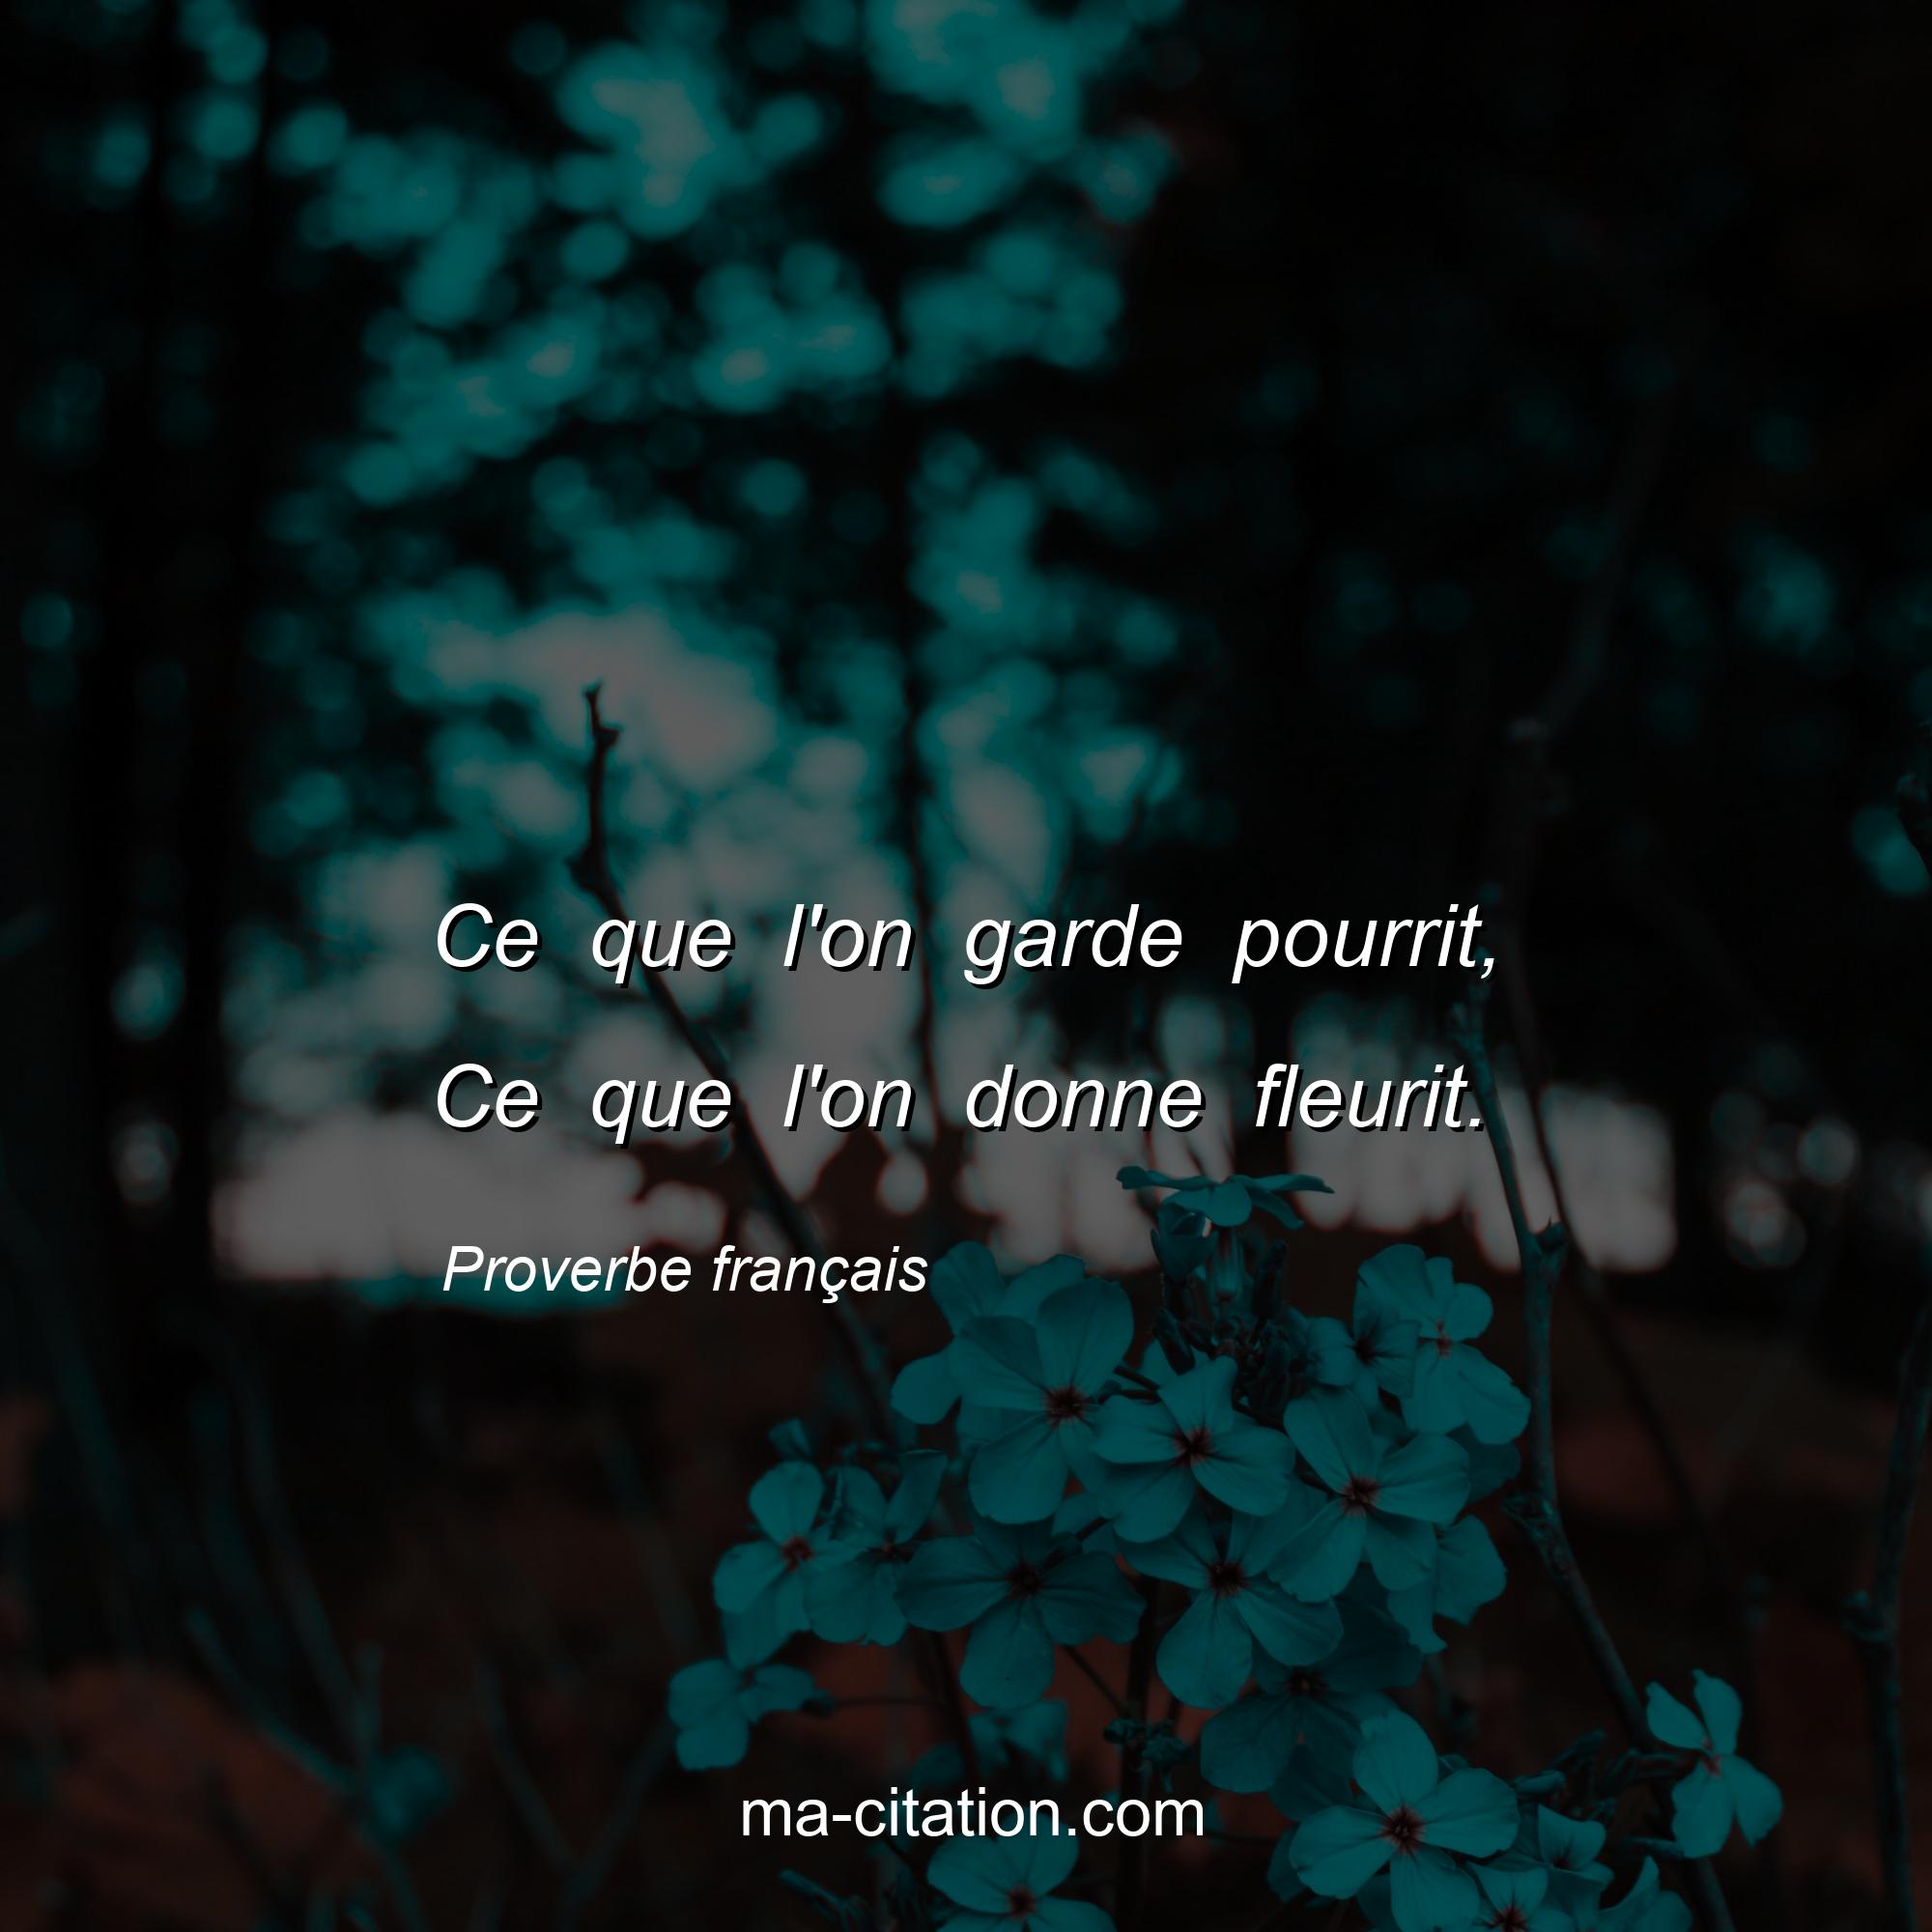 Proverbe français : Ce que l'on garde pourrit, Ce que l'on donne fleurit.